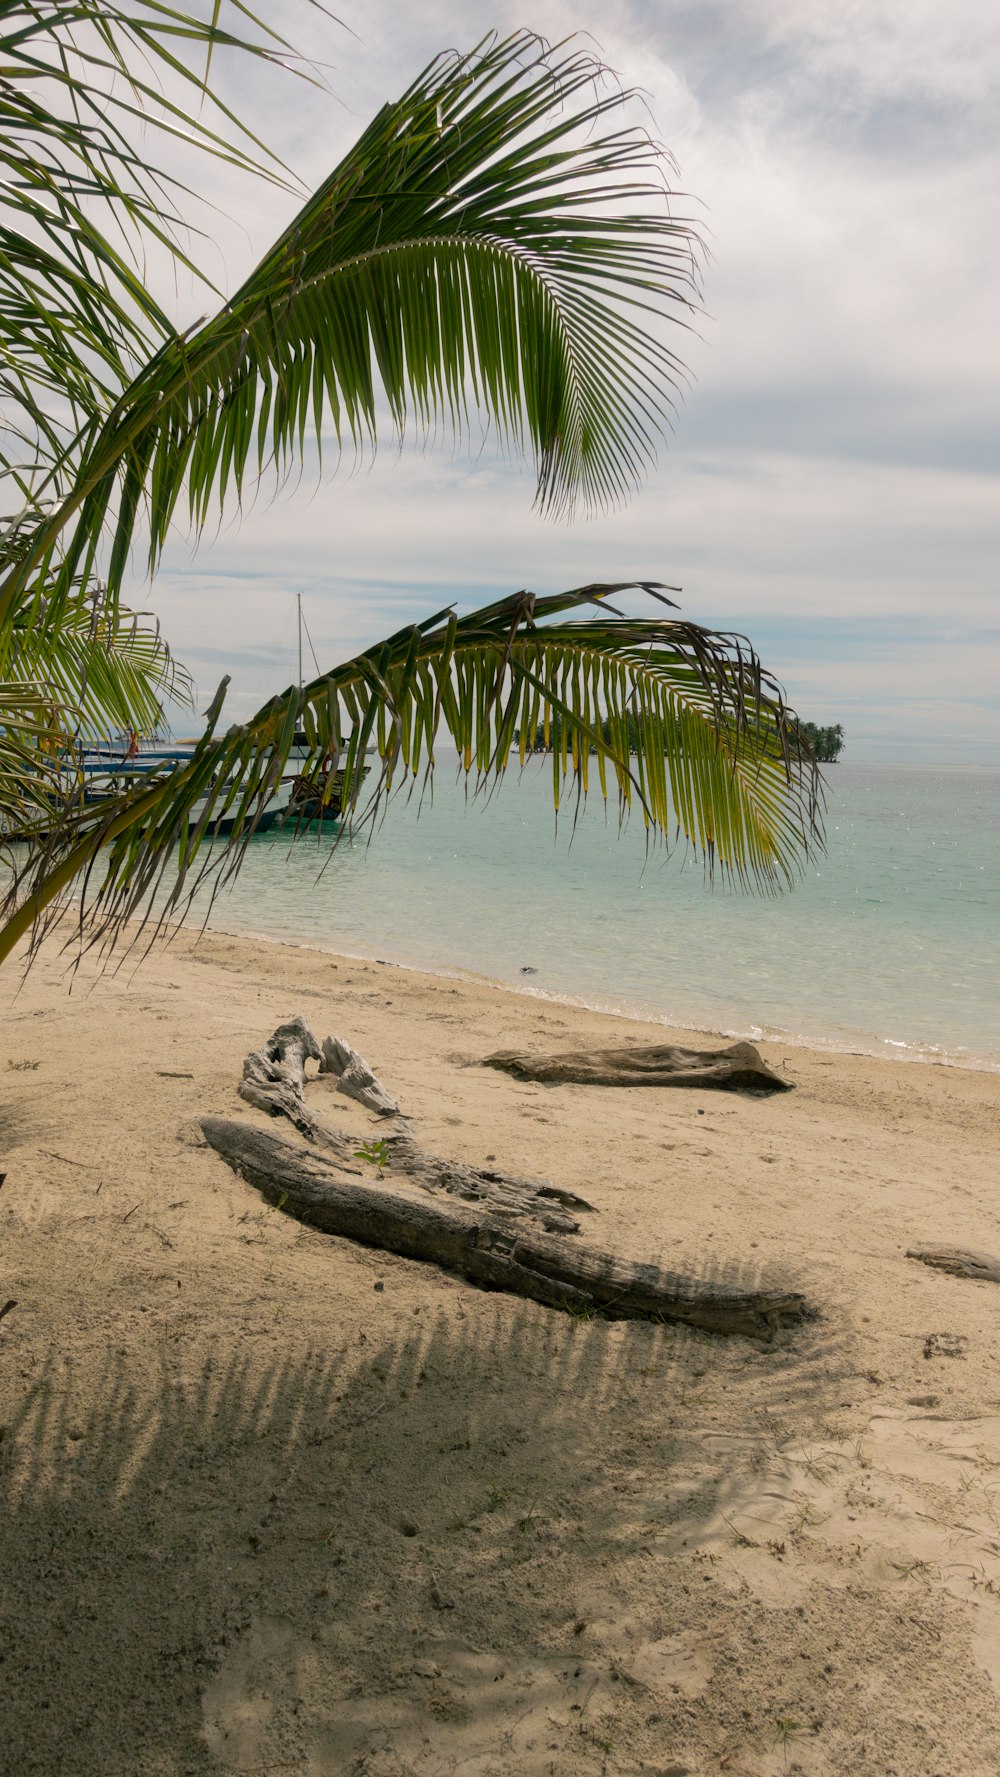 eine Palme am Strand mit einem Boot im Hintergrund